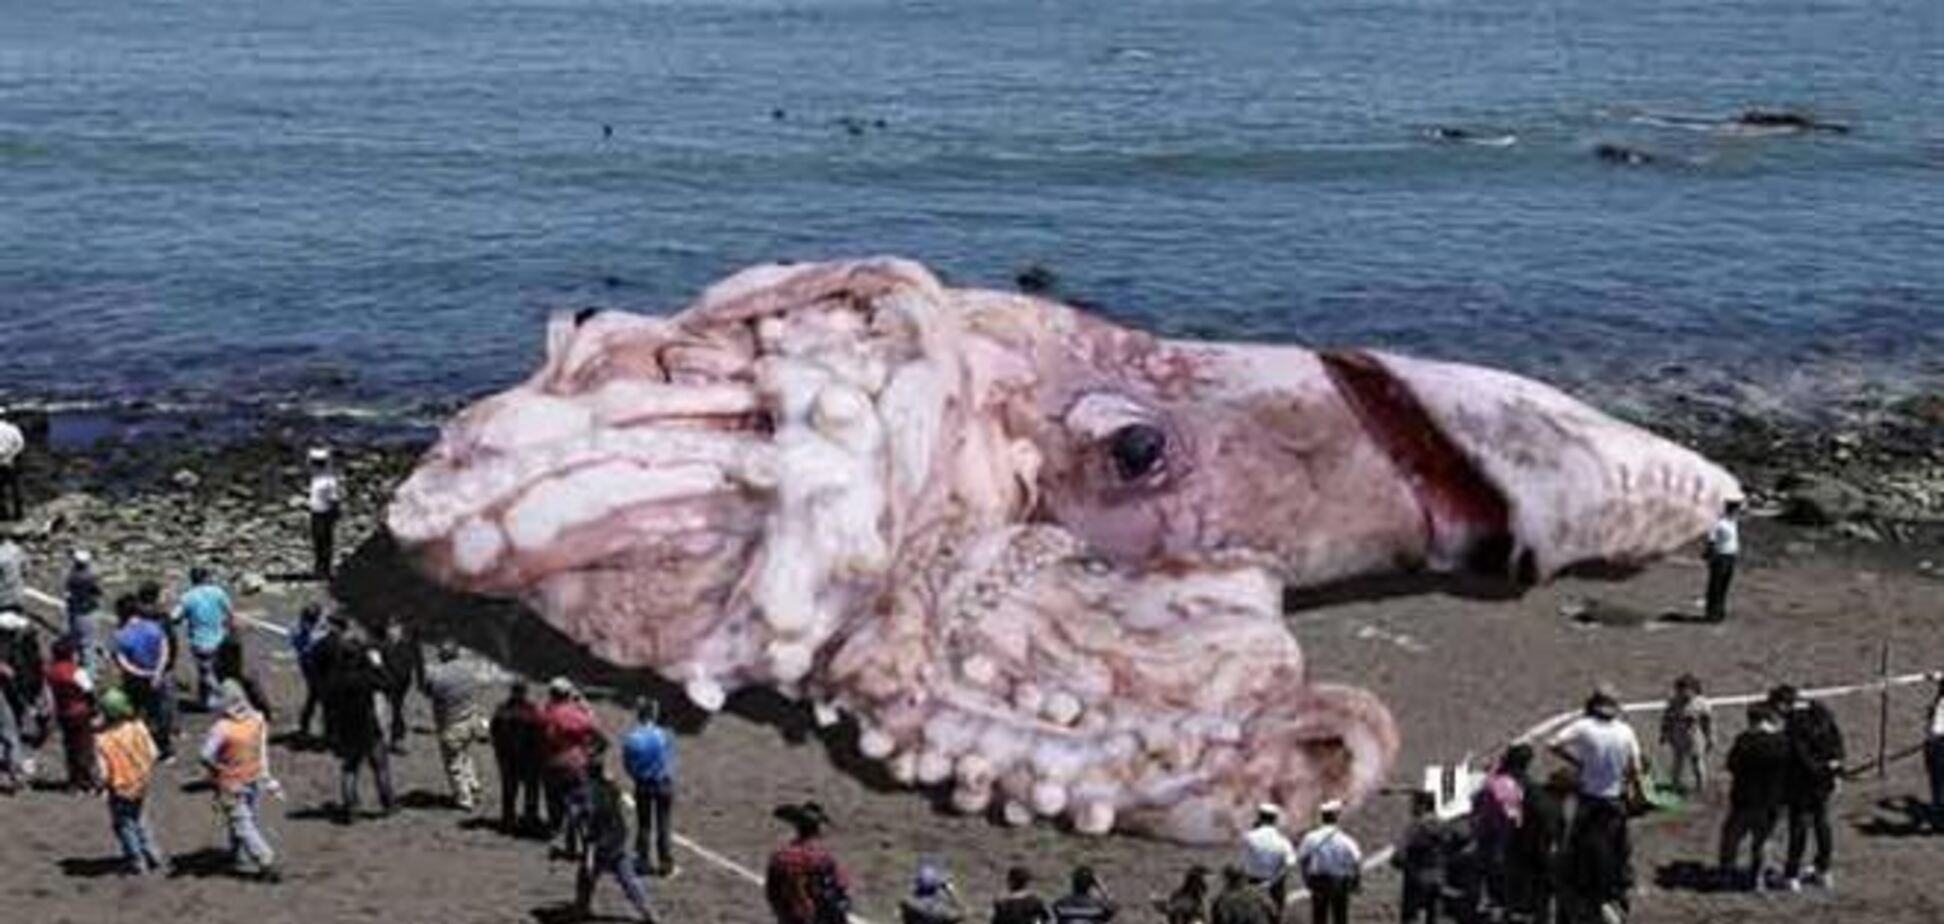  Гигантского кальмара выбросило на побережье Калифорнии